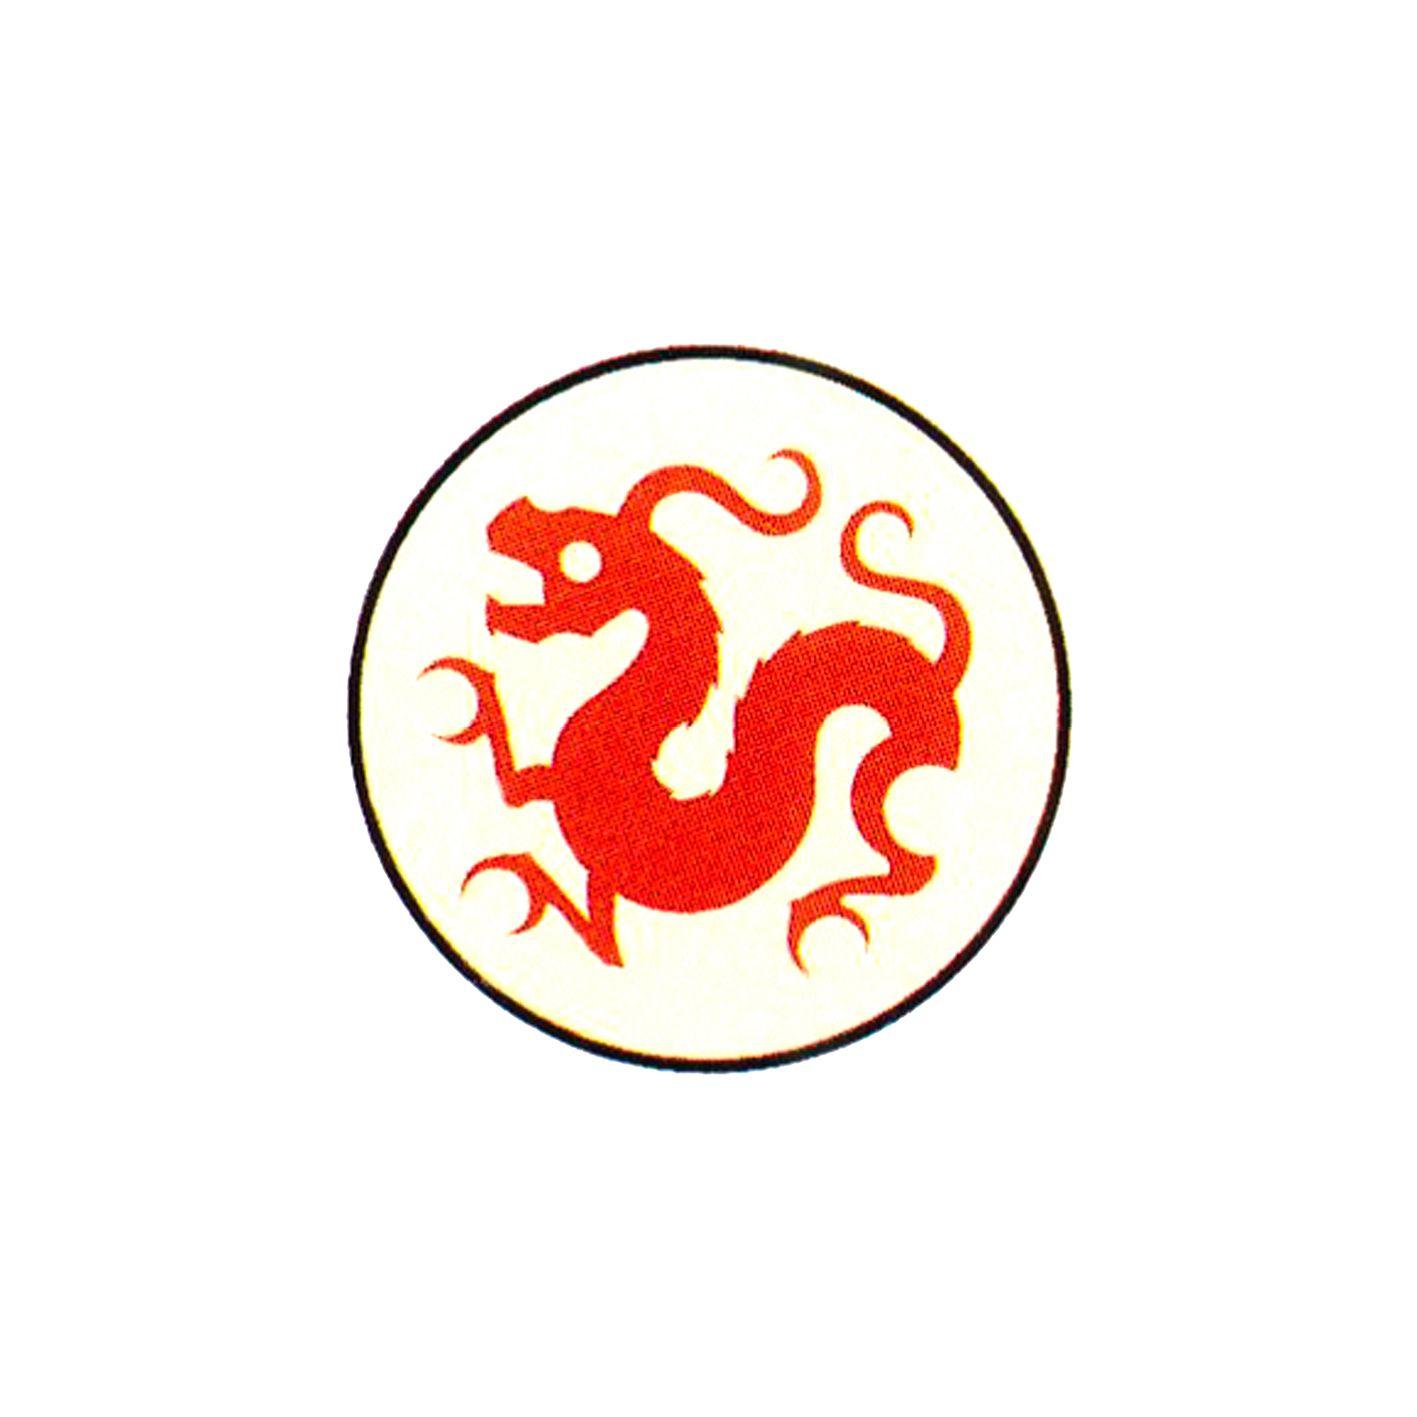 Chinese Phone Company Logo - China Bowl Trading Company Logo